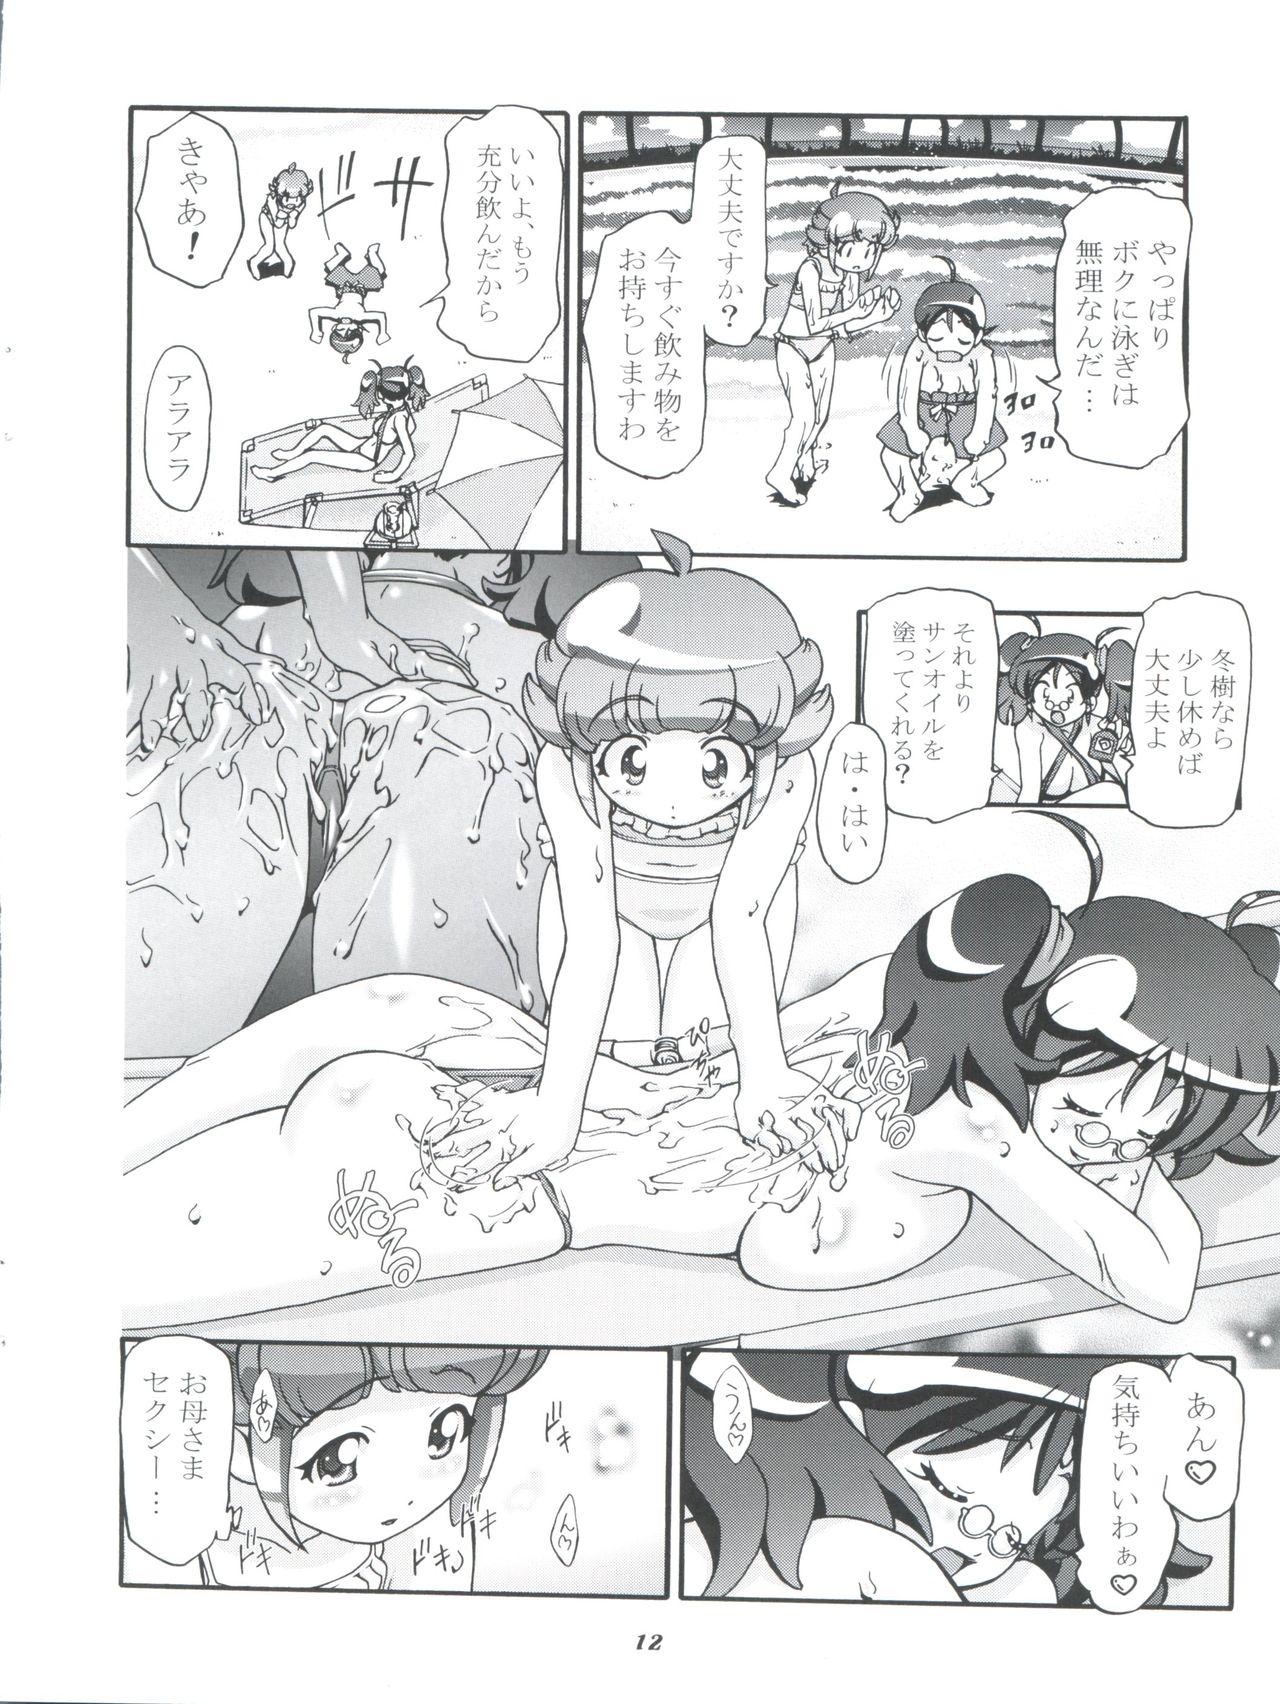 Exotic Aki Momo - Autumn Peach - Keroro gunsou Nalgona - Page 12